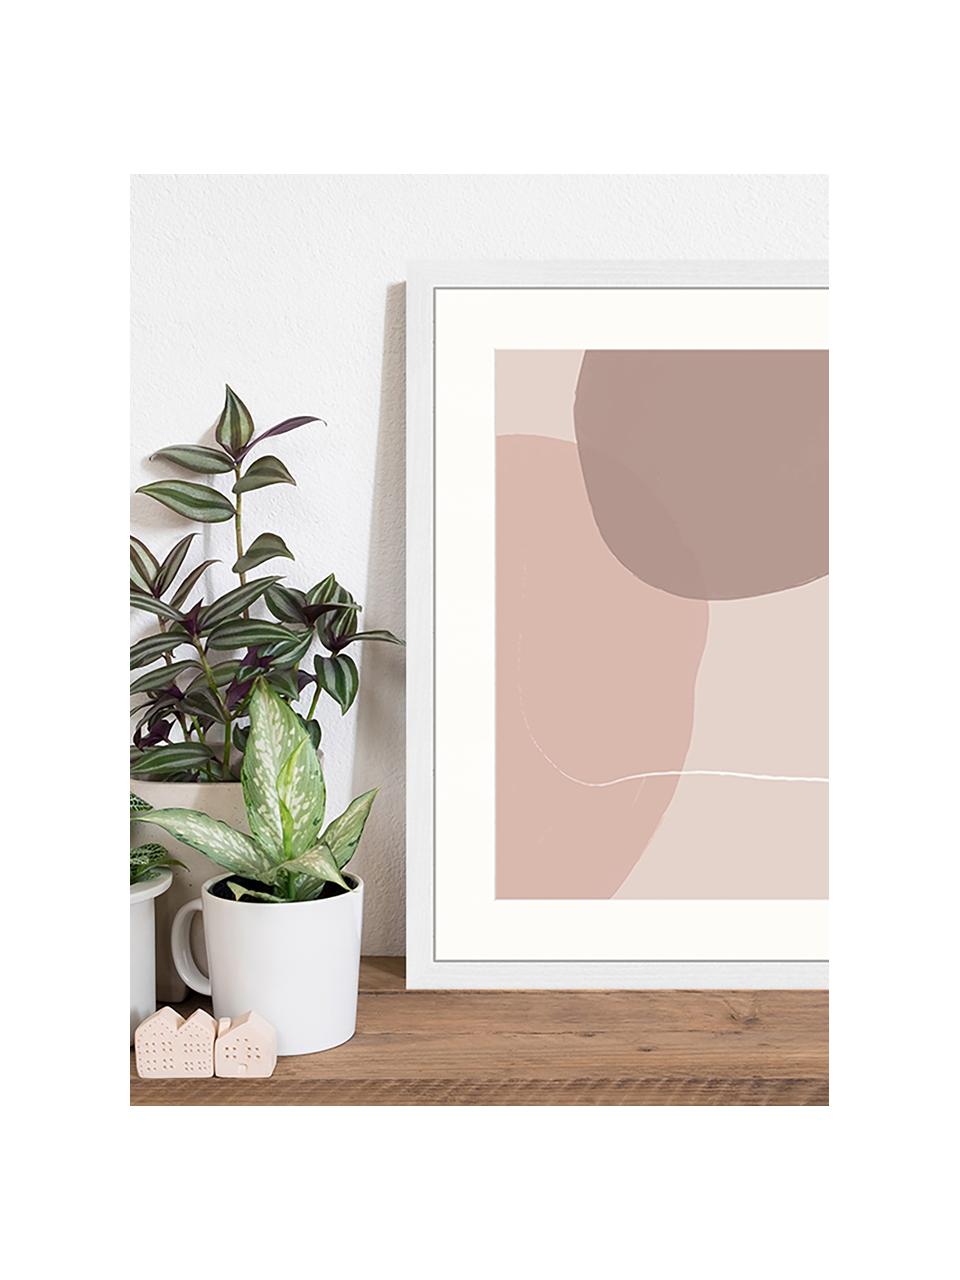 Gerahmter Digitaldruck Abstract Pink, Bild: Digitaldruck auf Papier, , Rahmen: Holz, lackiert, Front: Plexiglas, Mehrfarbig, B 43 x H 53 cm